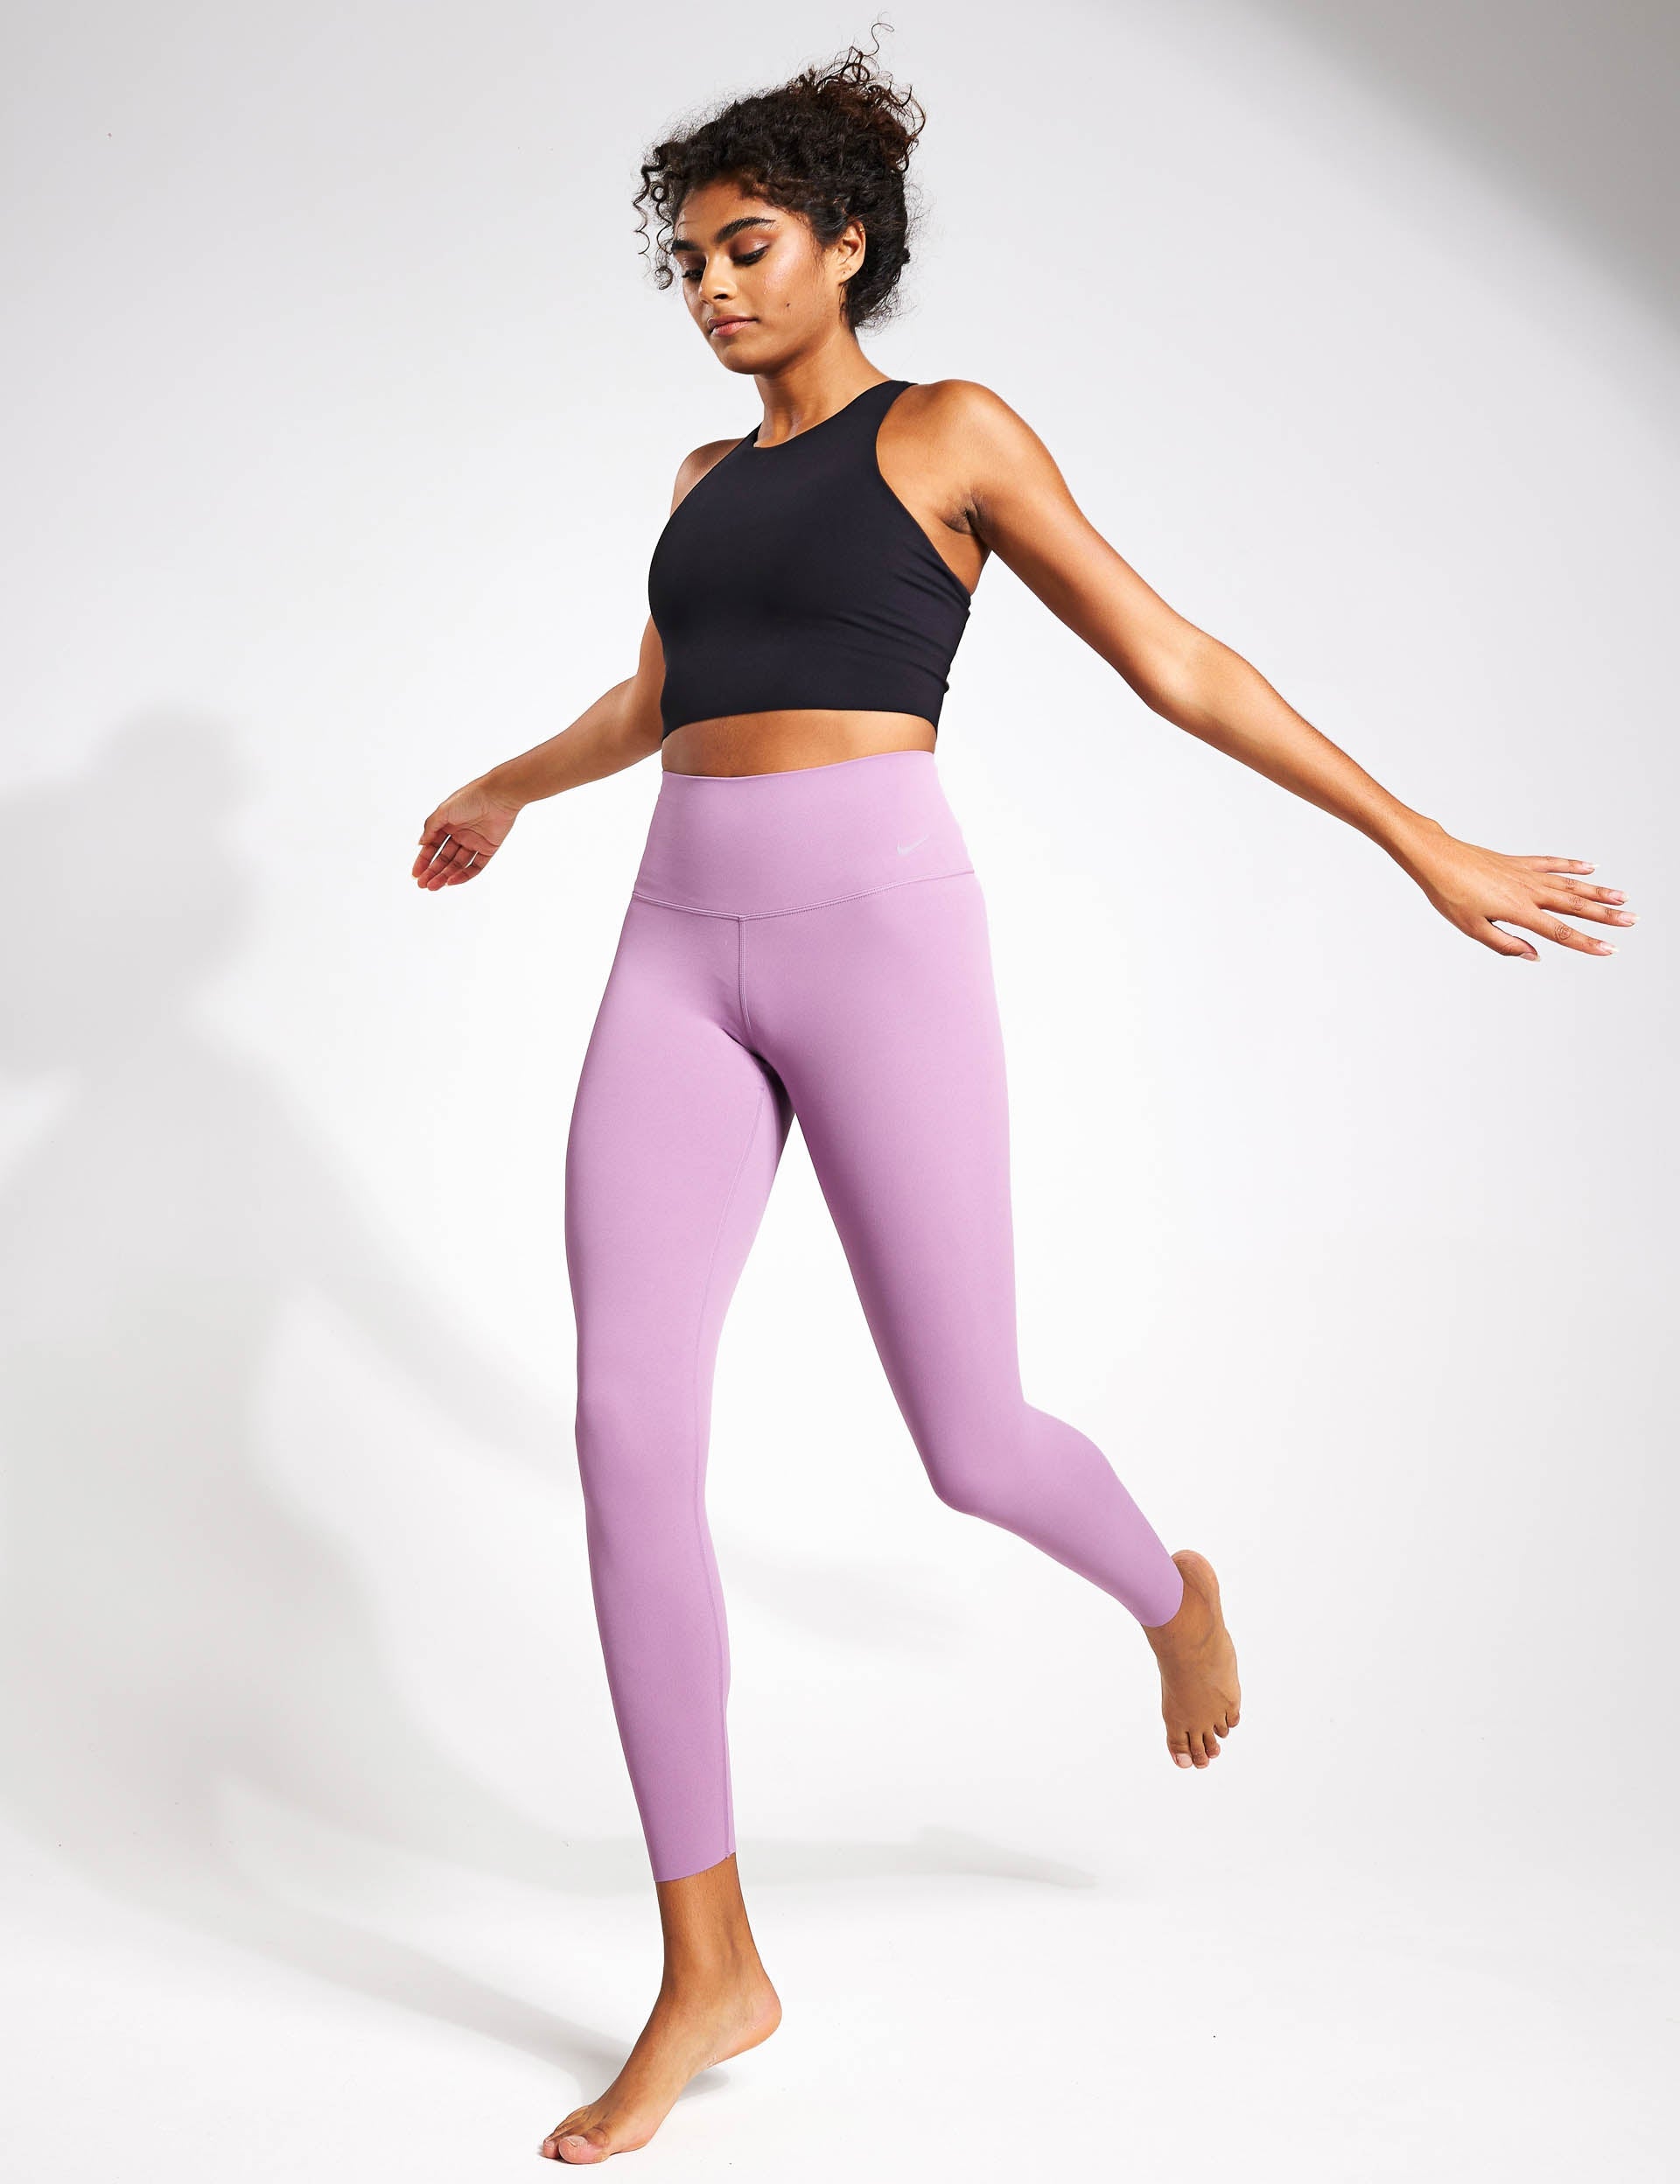 Nike Women's Yoga Dri-fit Luxe Shelf-bra Cropped Tank Top In Black